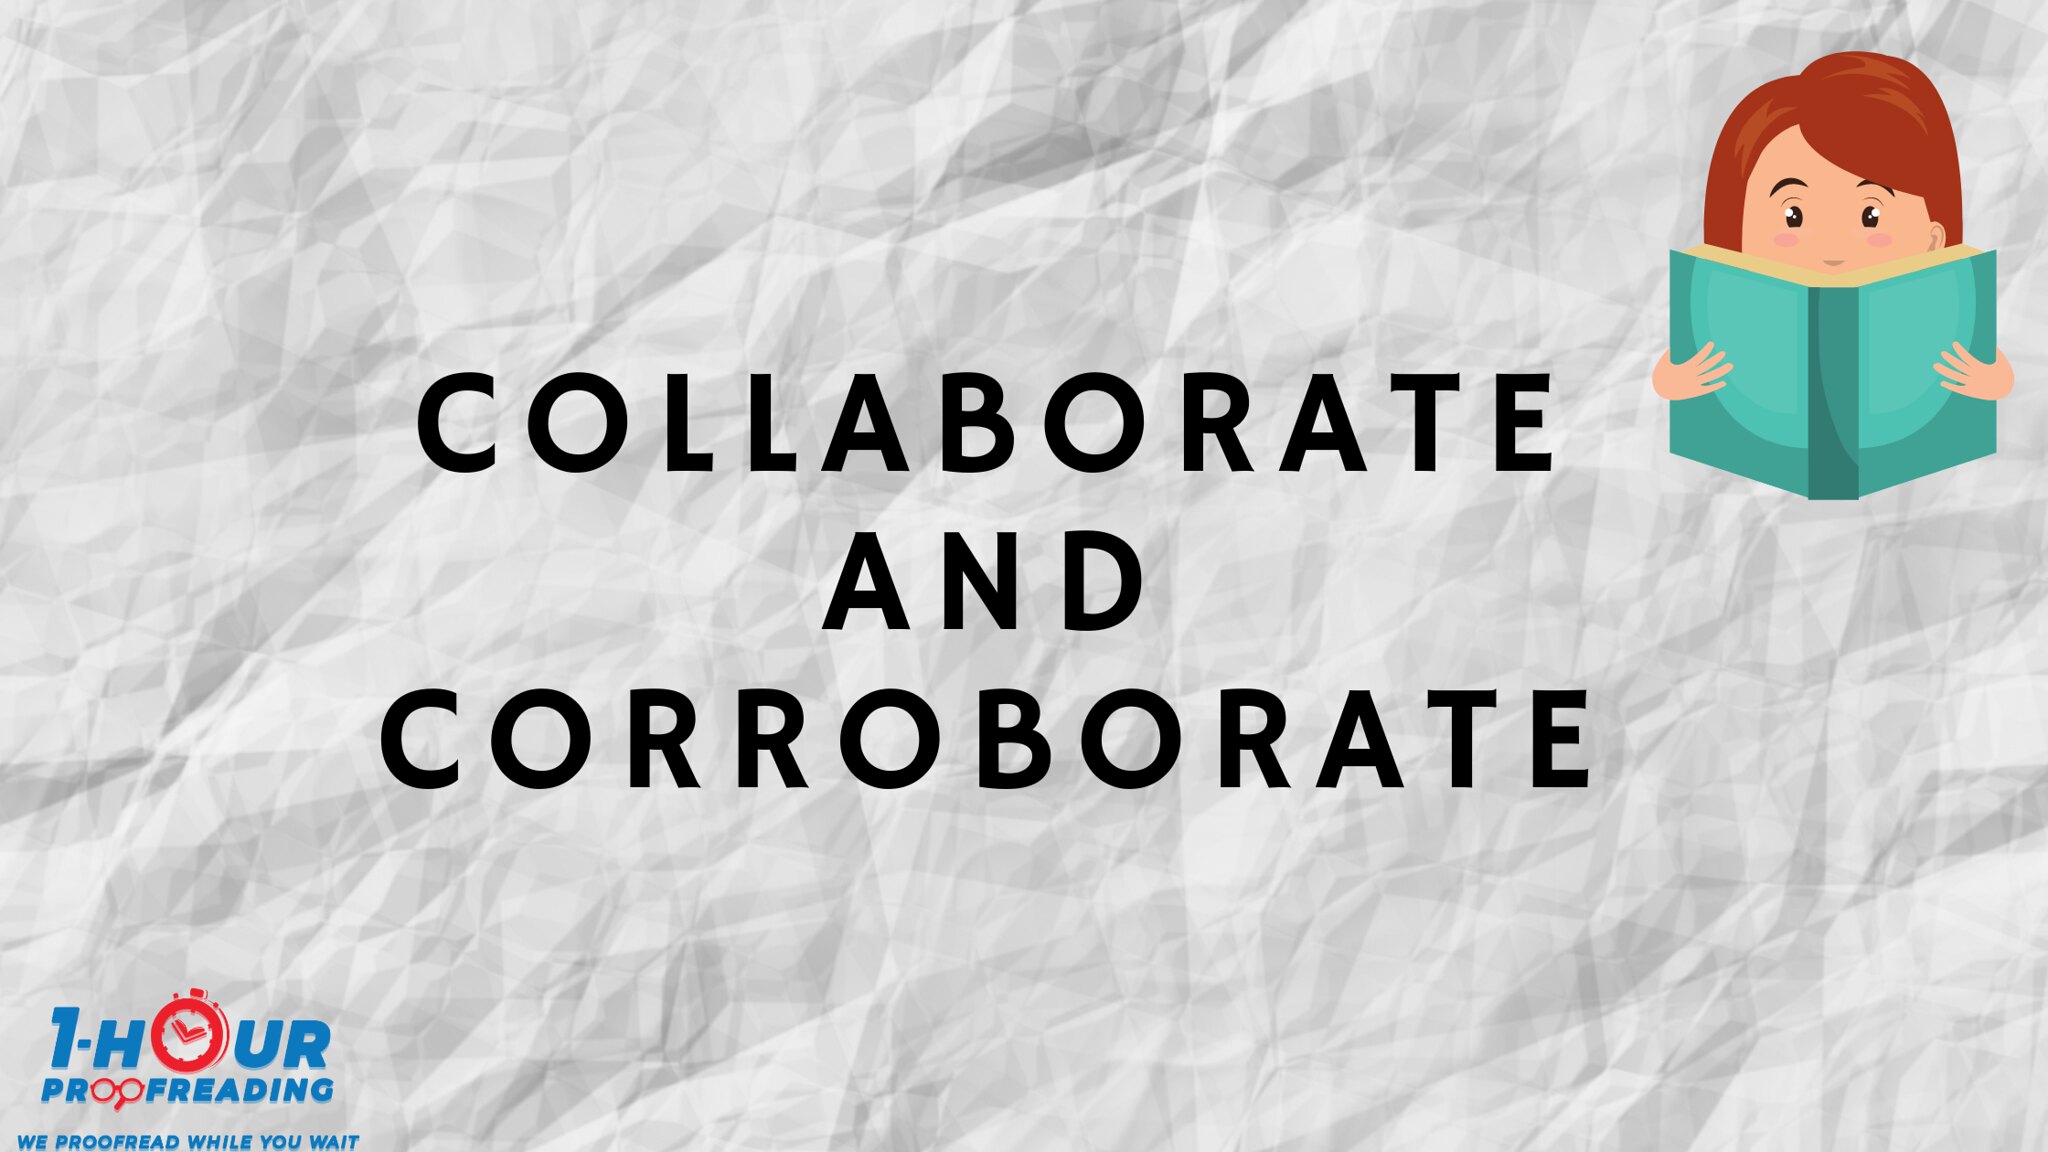 Collaborate and Corroborate